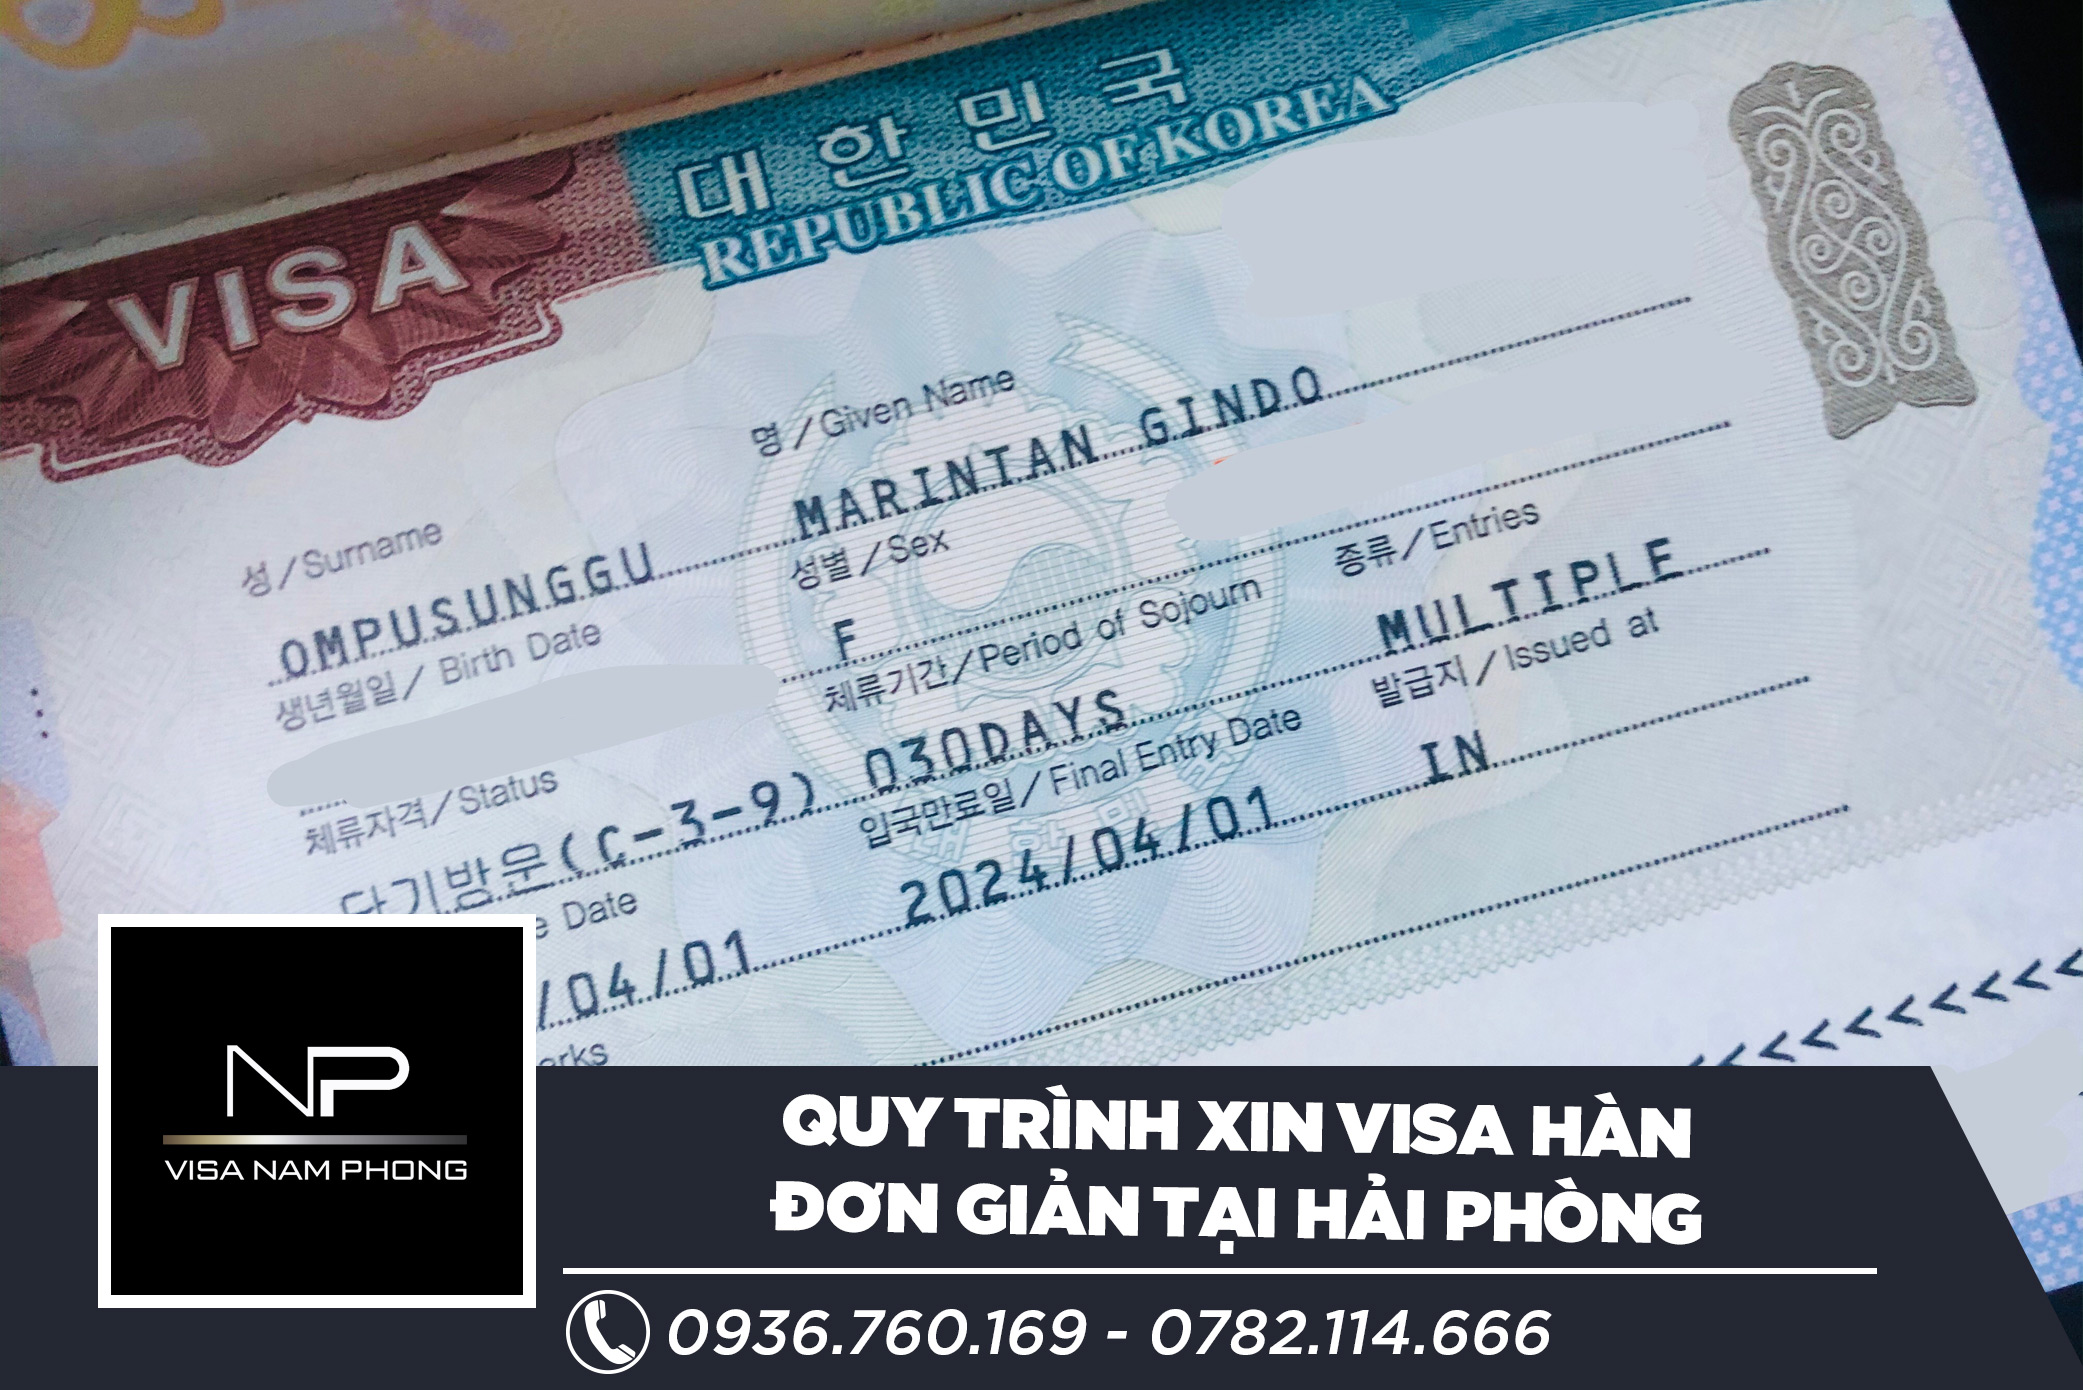 Quy trình xin visa Hàn đơn giản tại Hải Phòng